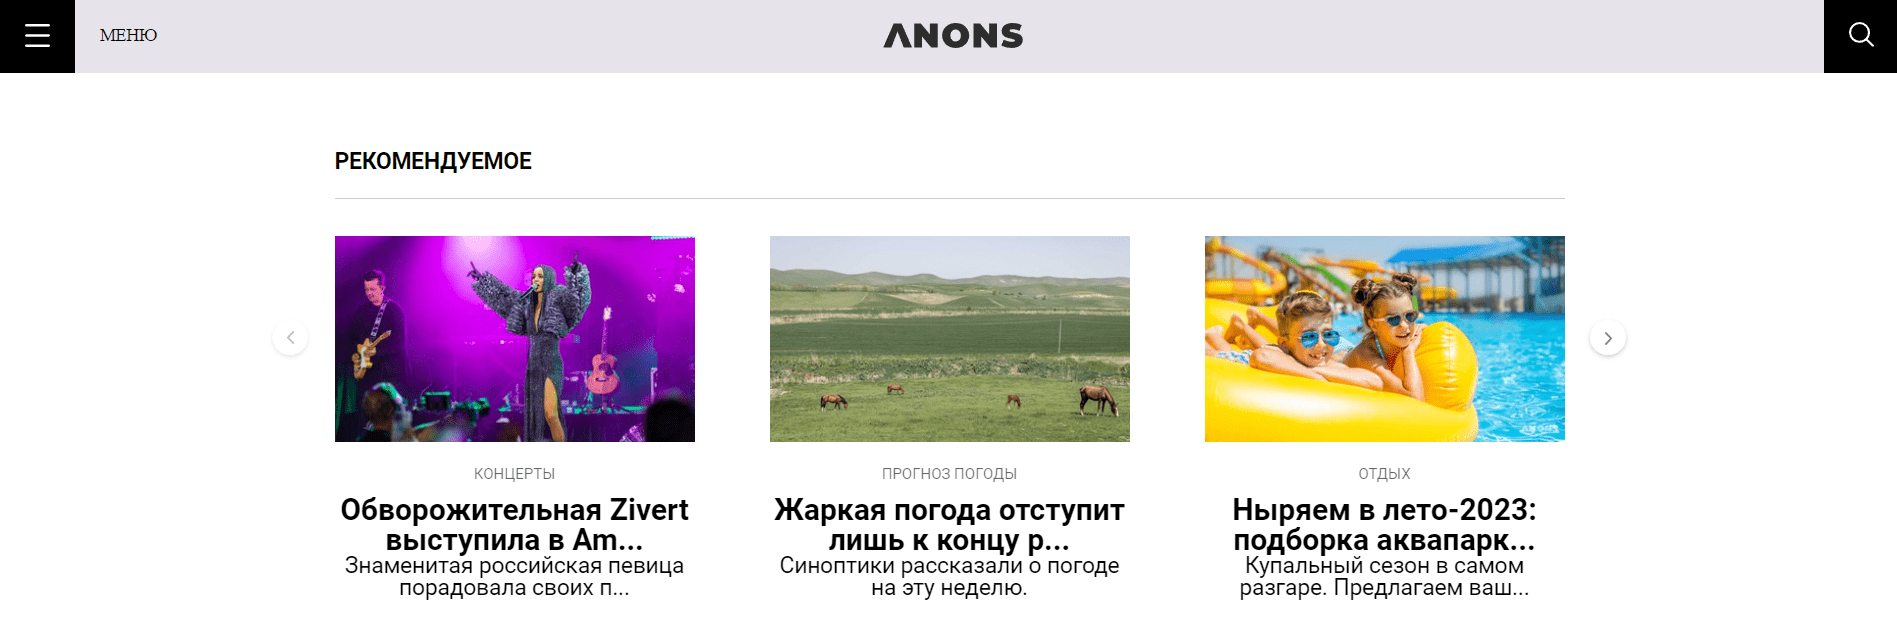 ANONS.uz - официальный сайт